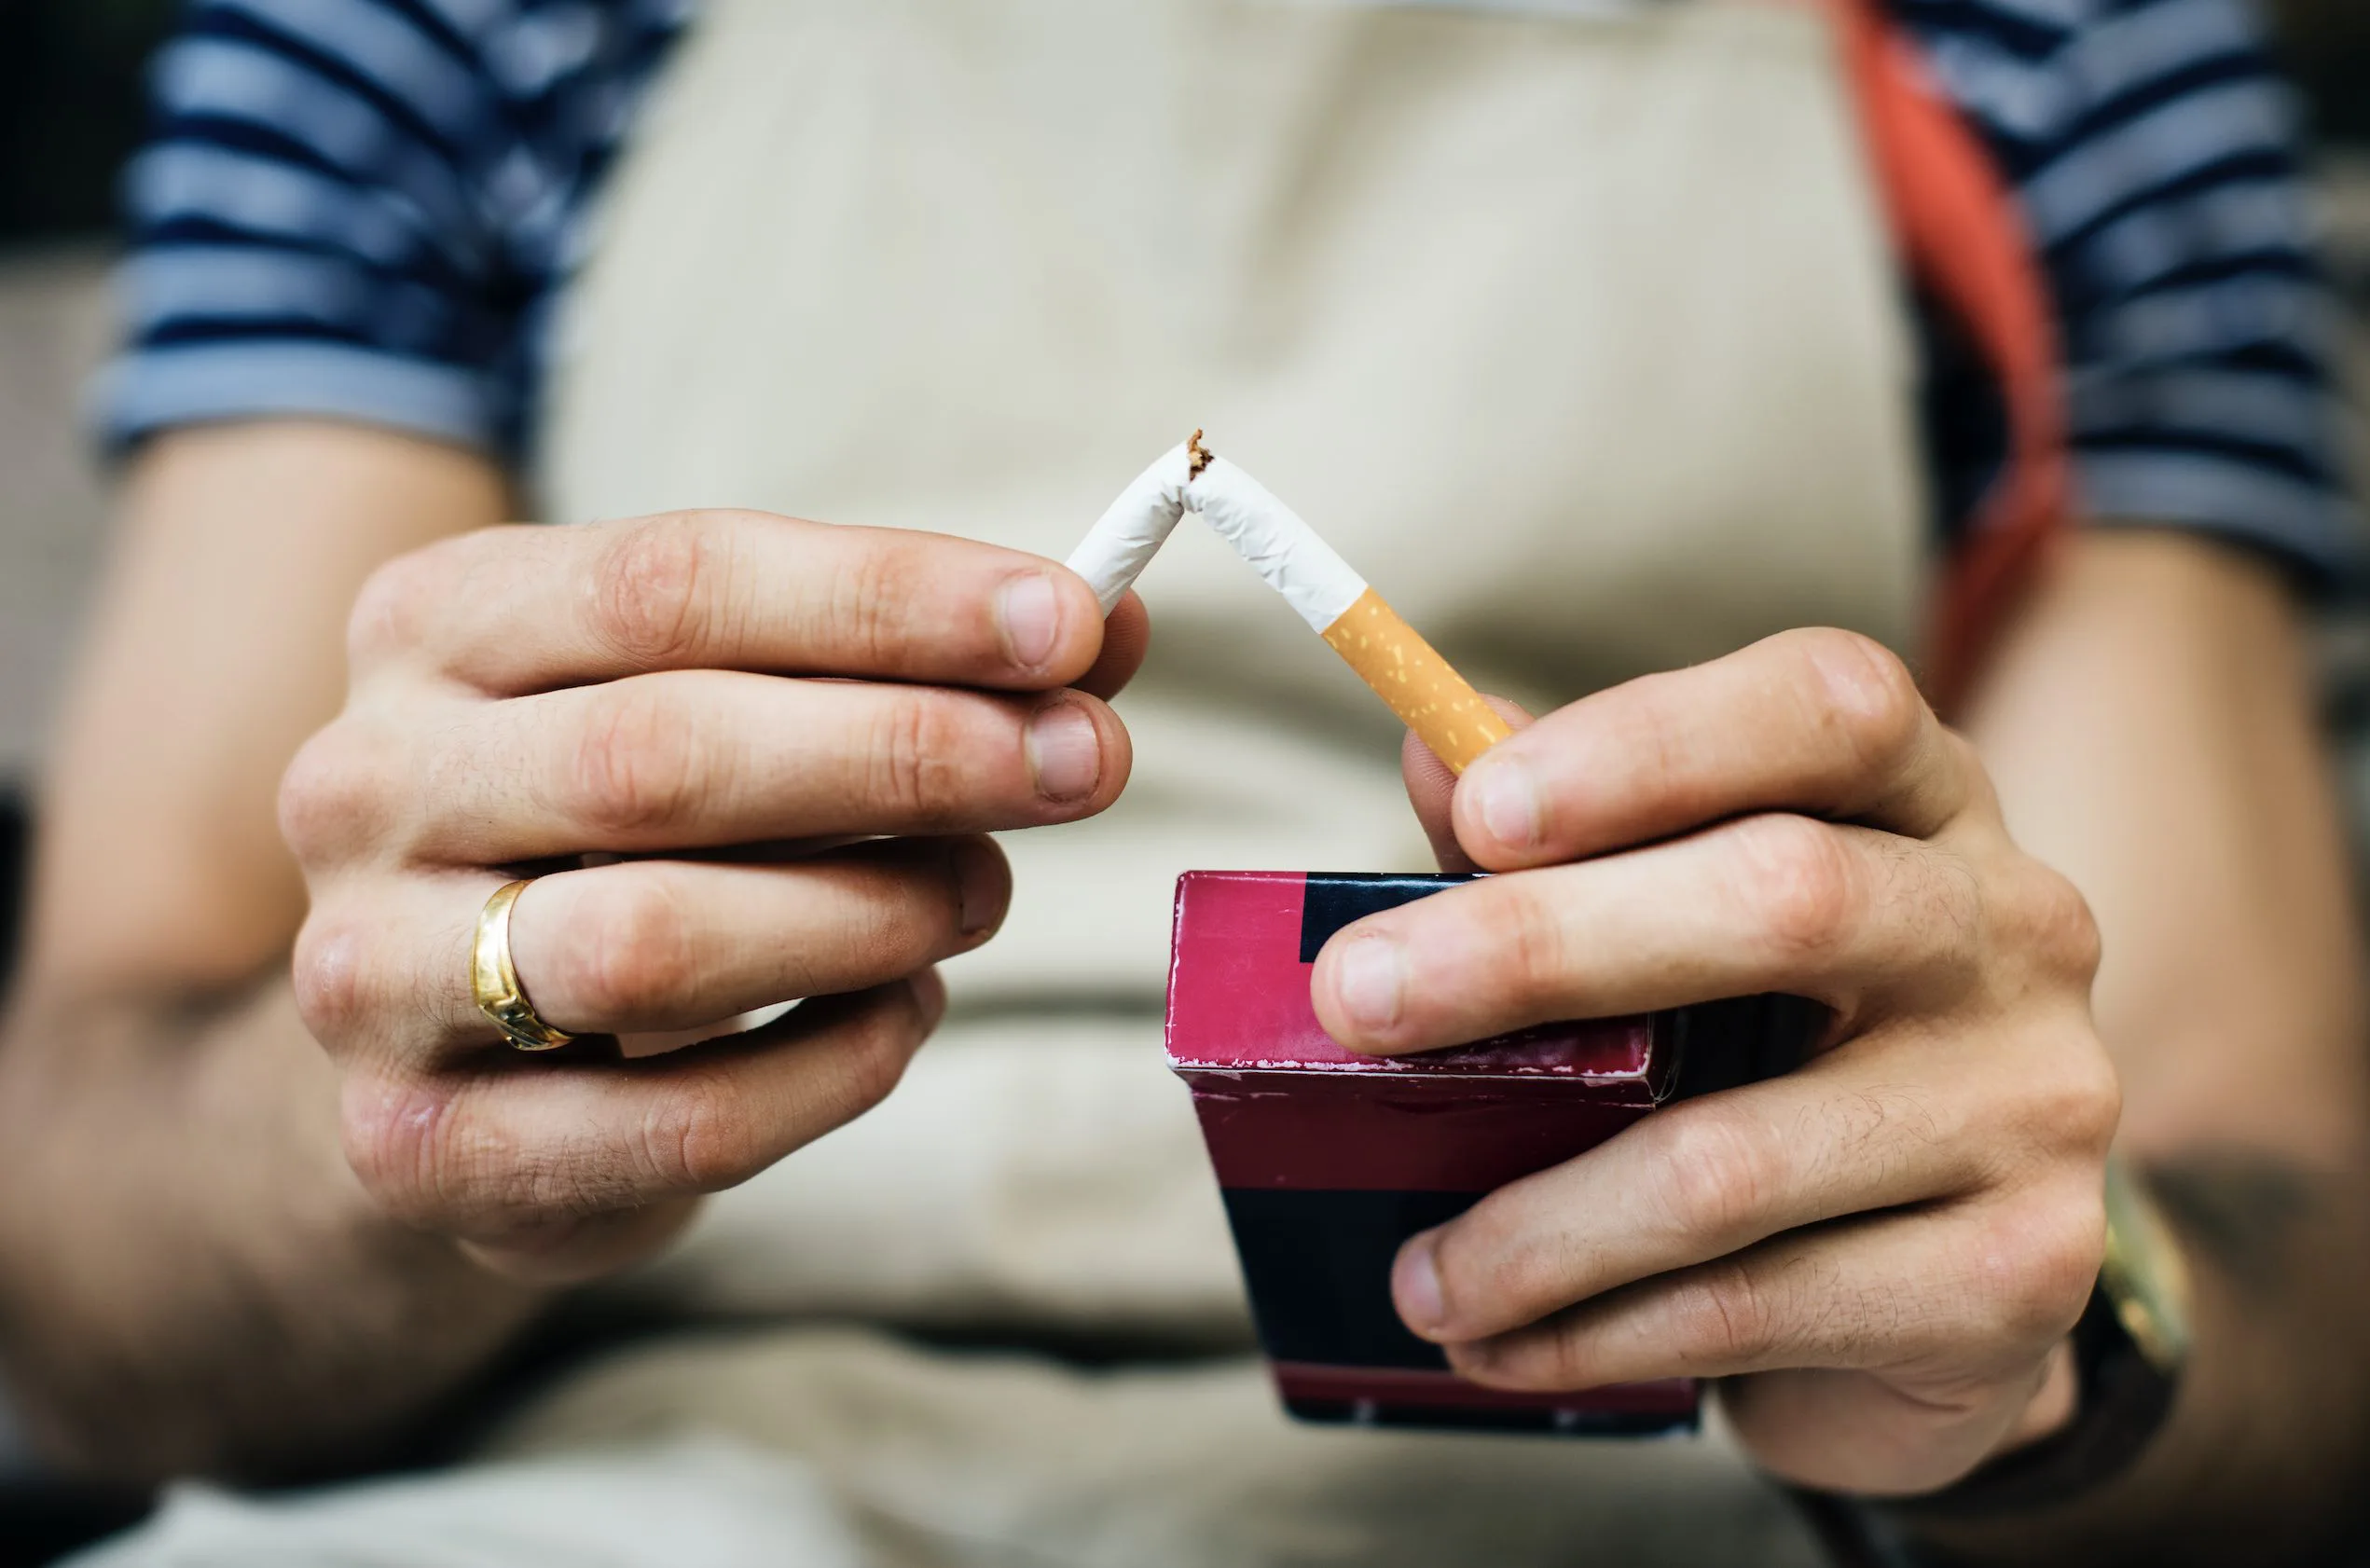 Ученые: современные сигареты стали гораздо опаснее, чем 50 лет назад › новости санкт-петербурга › mr-7.ru